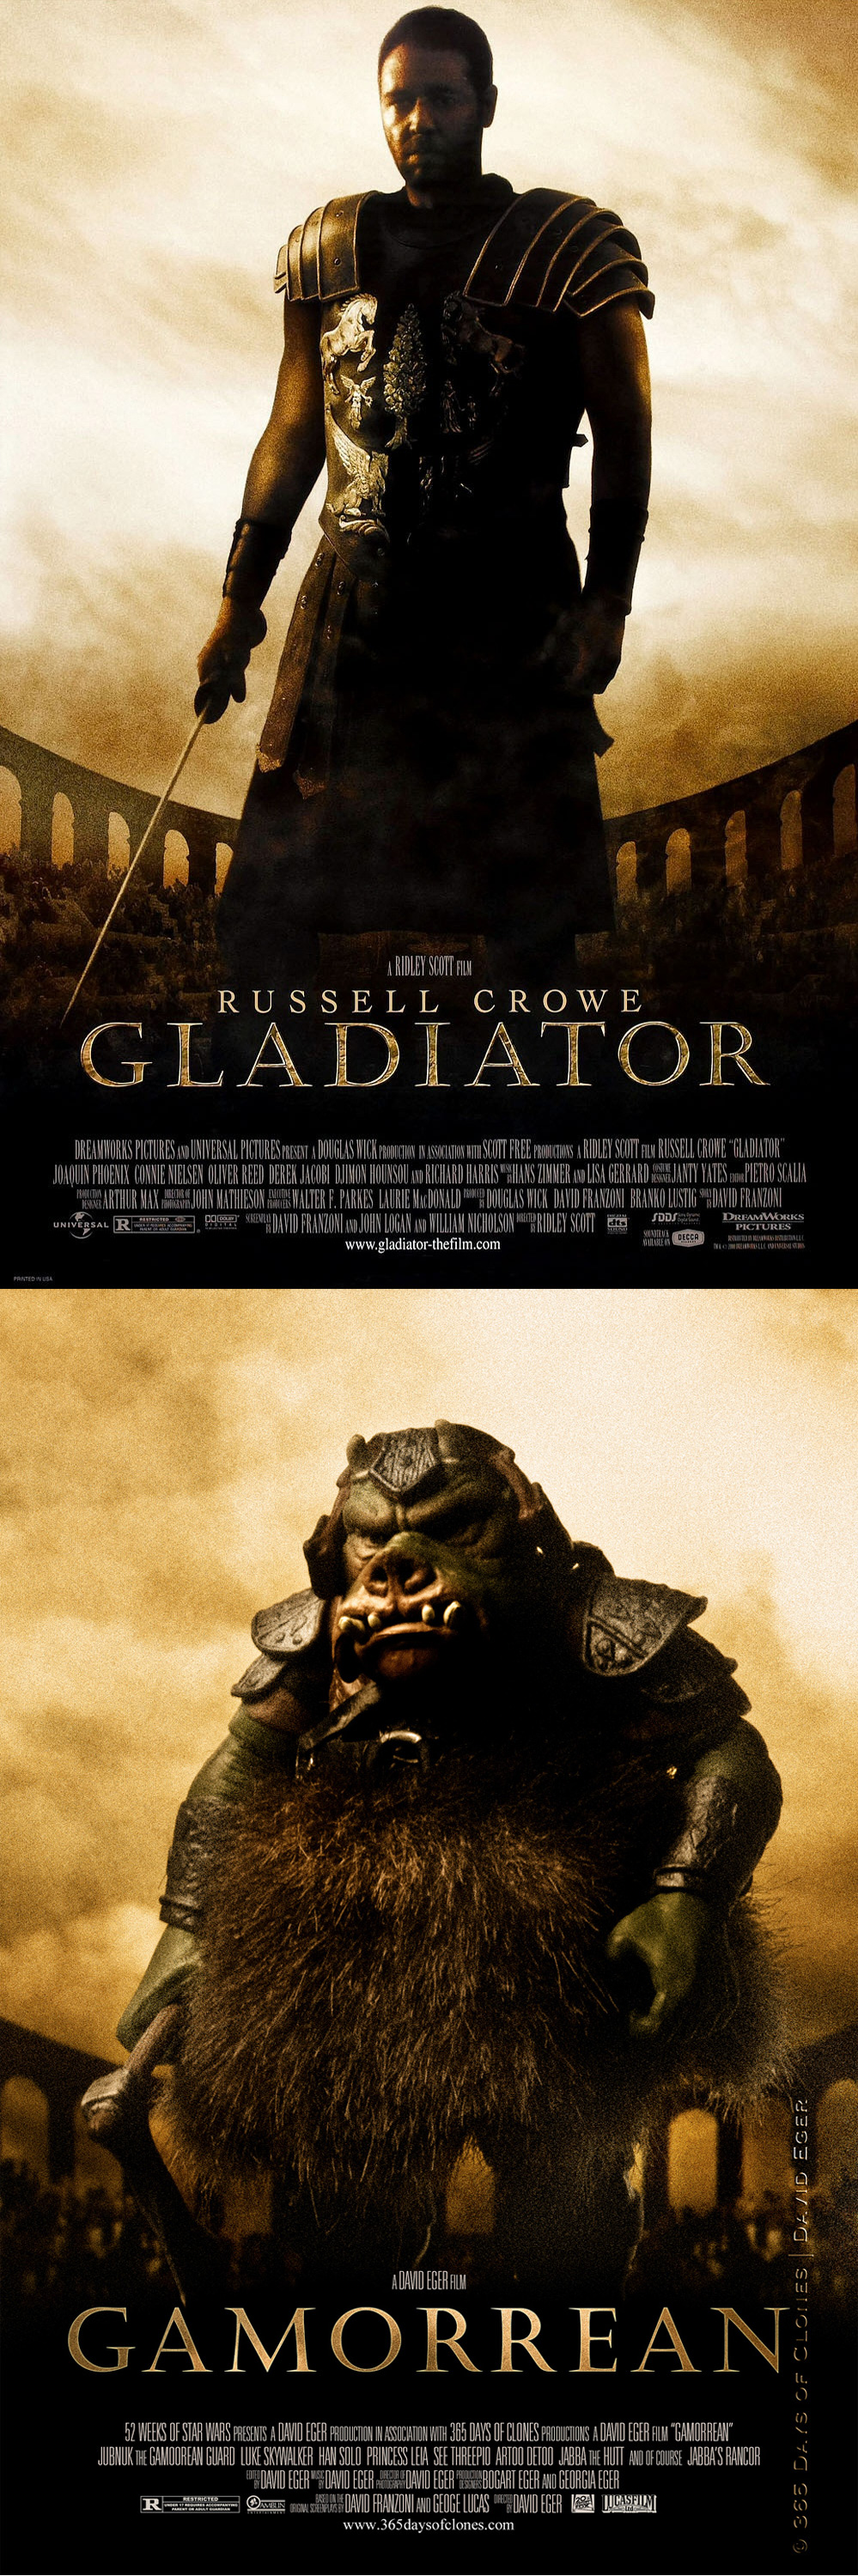 Fotografías clonadas: Póster de Gladiator